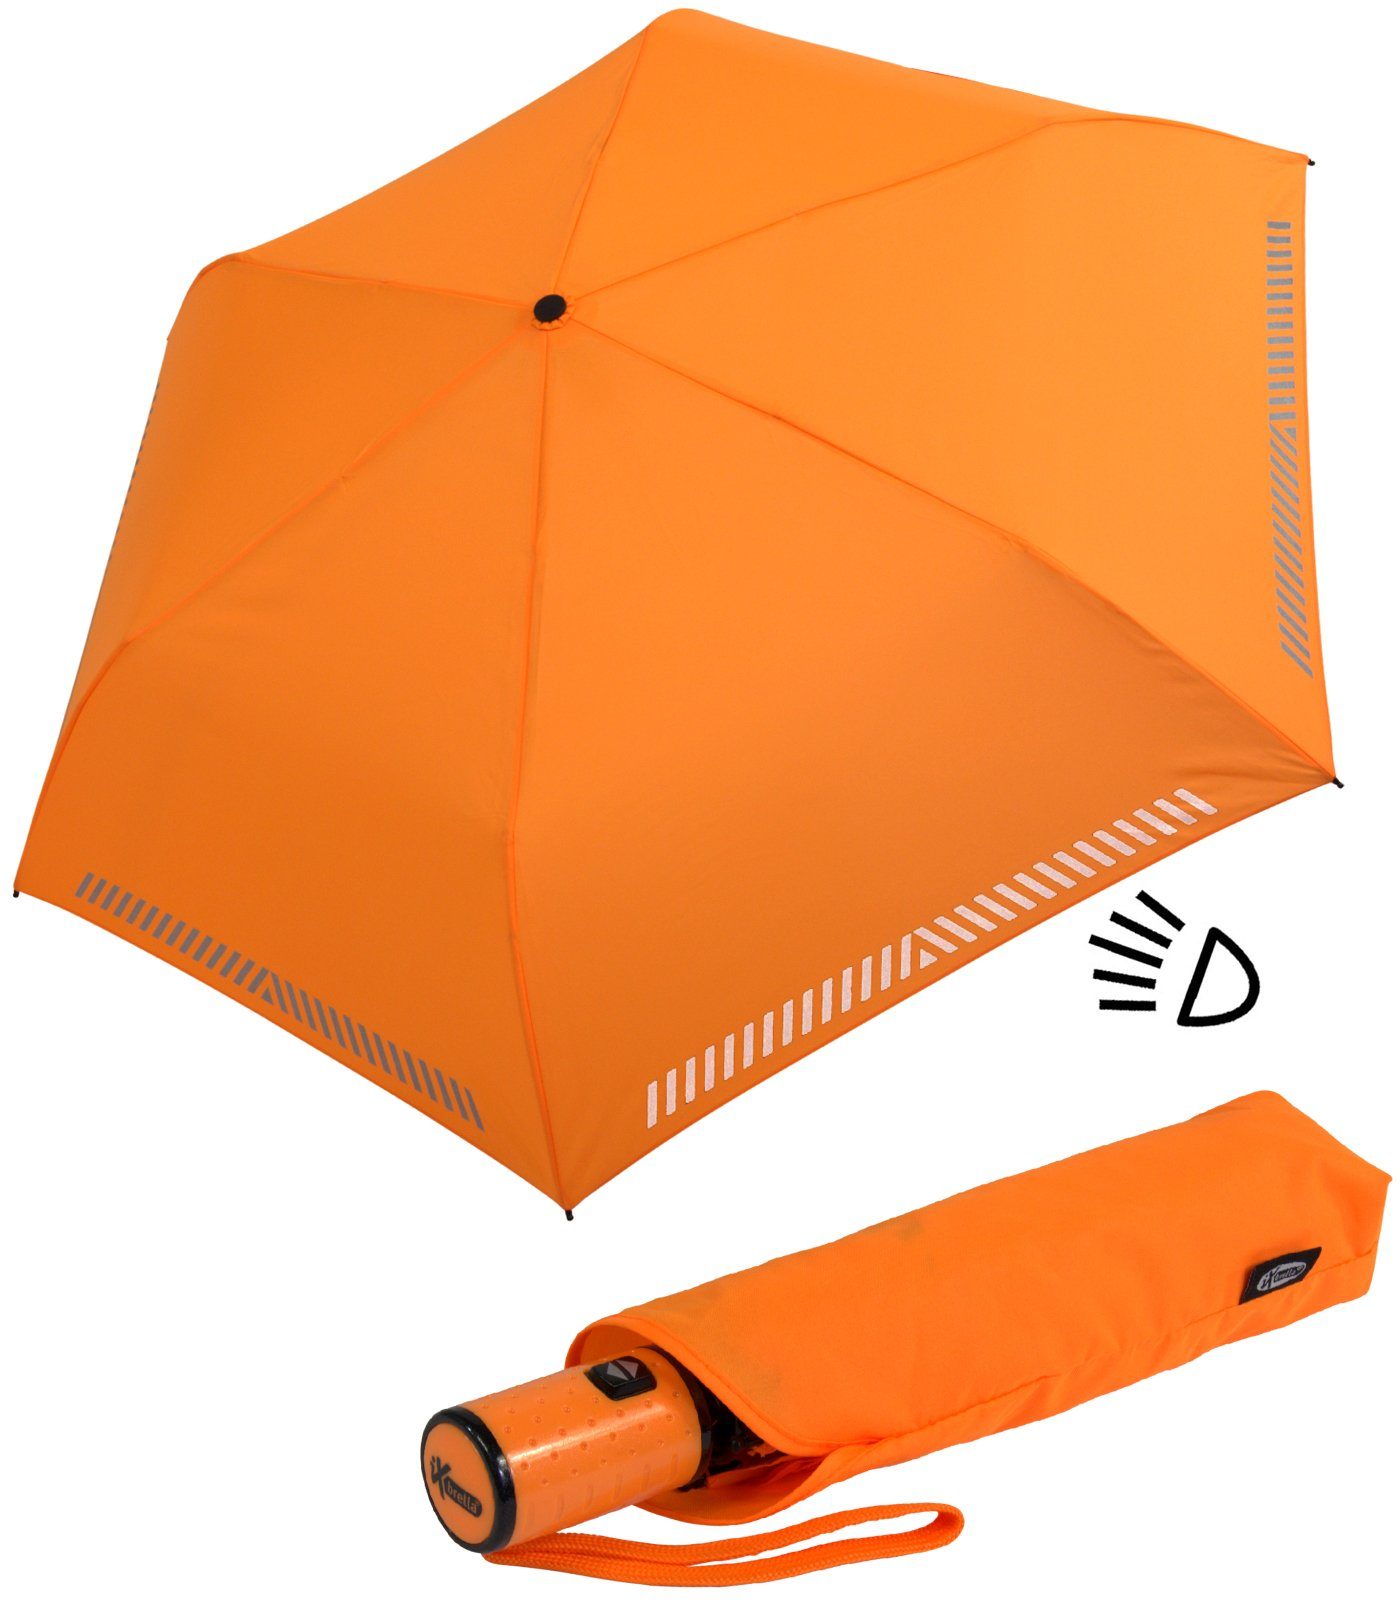 - Kinderschirm mit reflektierend, Reflex-Streifen Sicherheit durch Taschenregenschirm iX-brella orange Auf-Zu-Automatik, neon